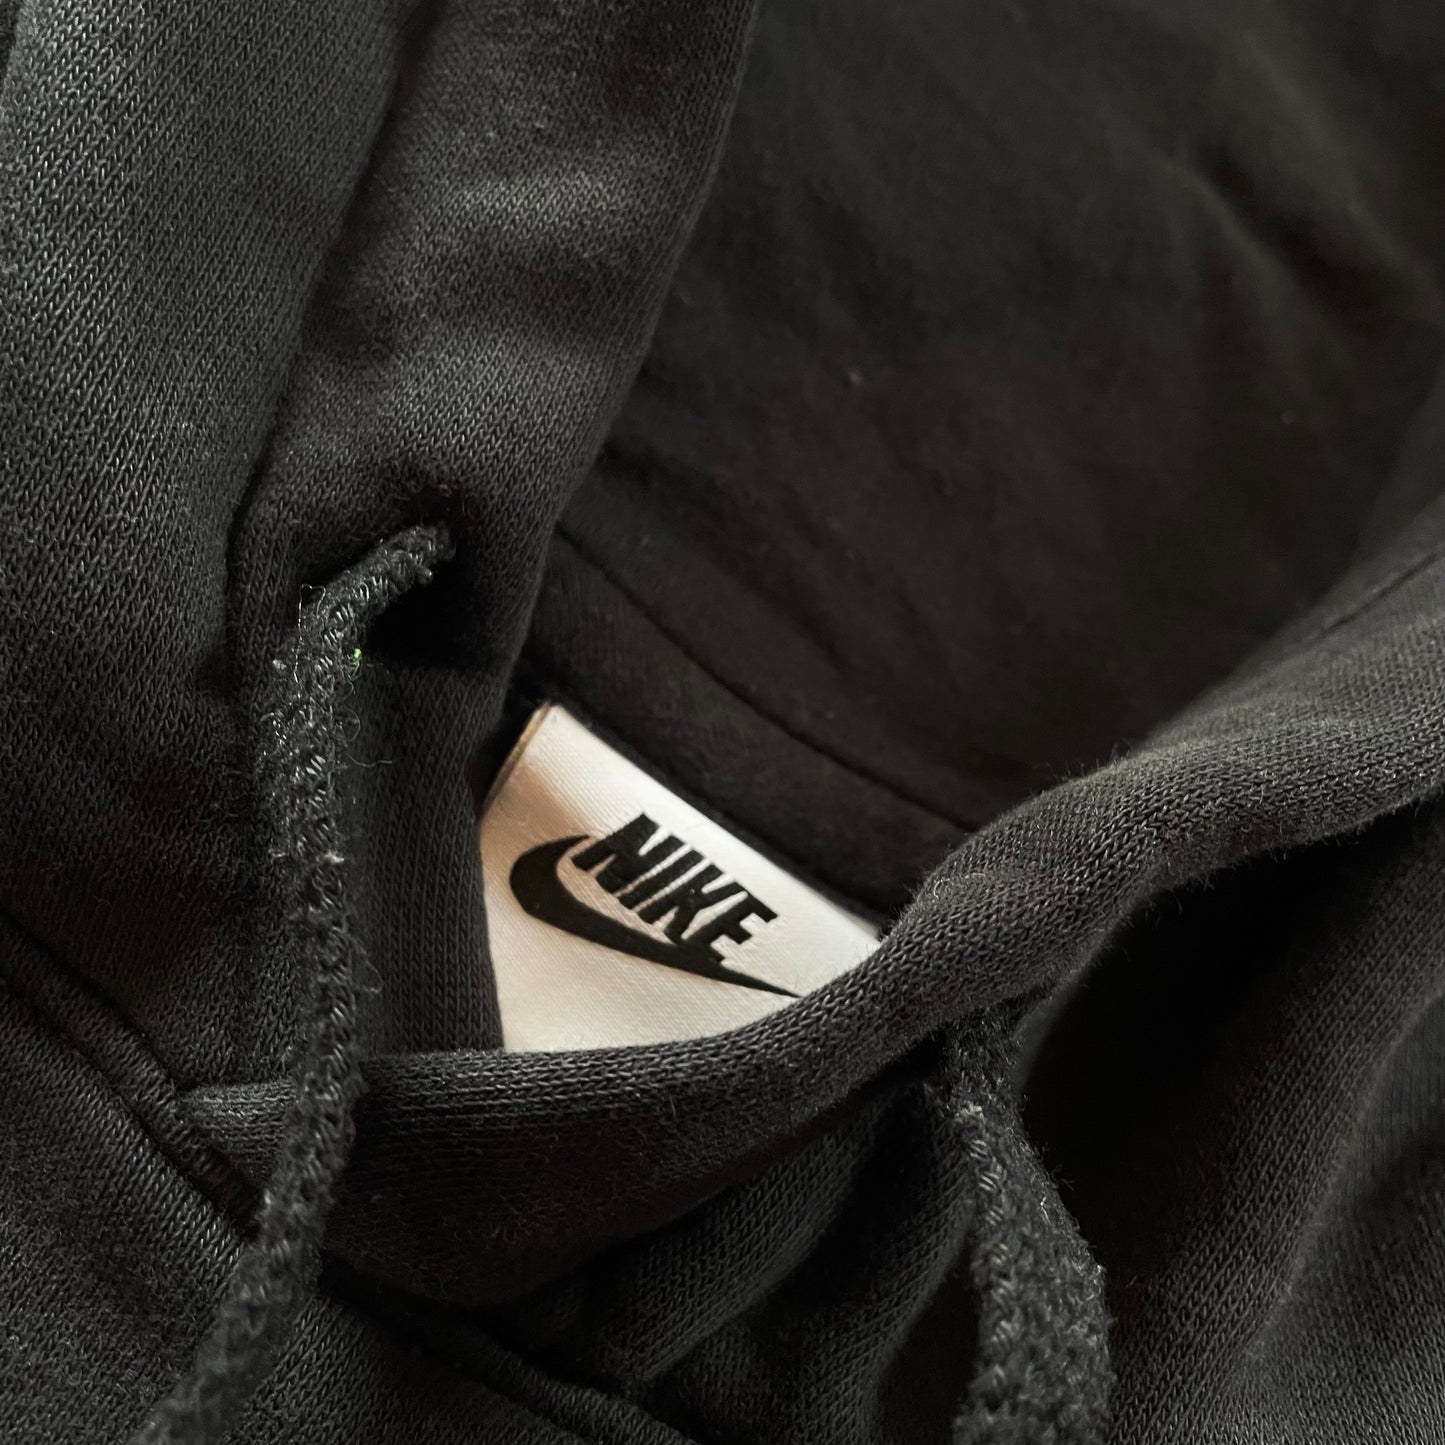 (L) Nike Hoodie Full Black